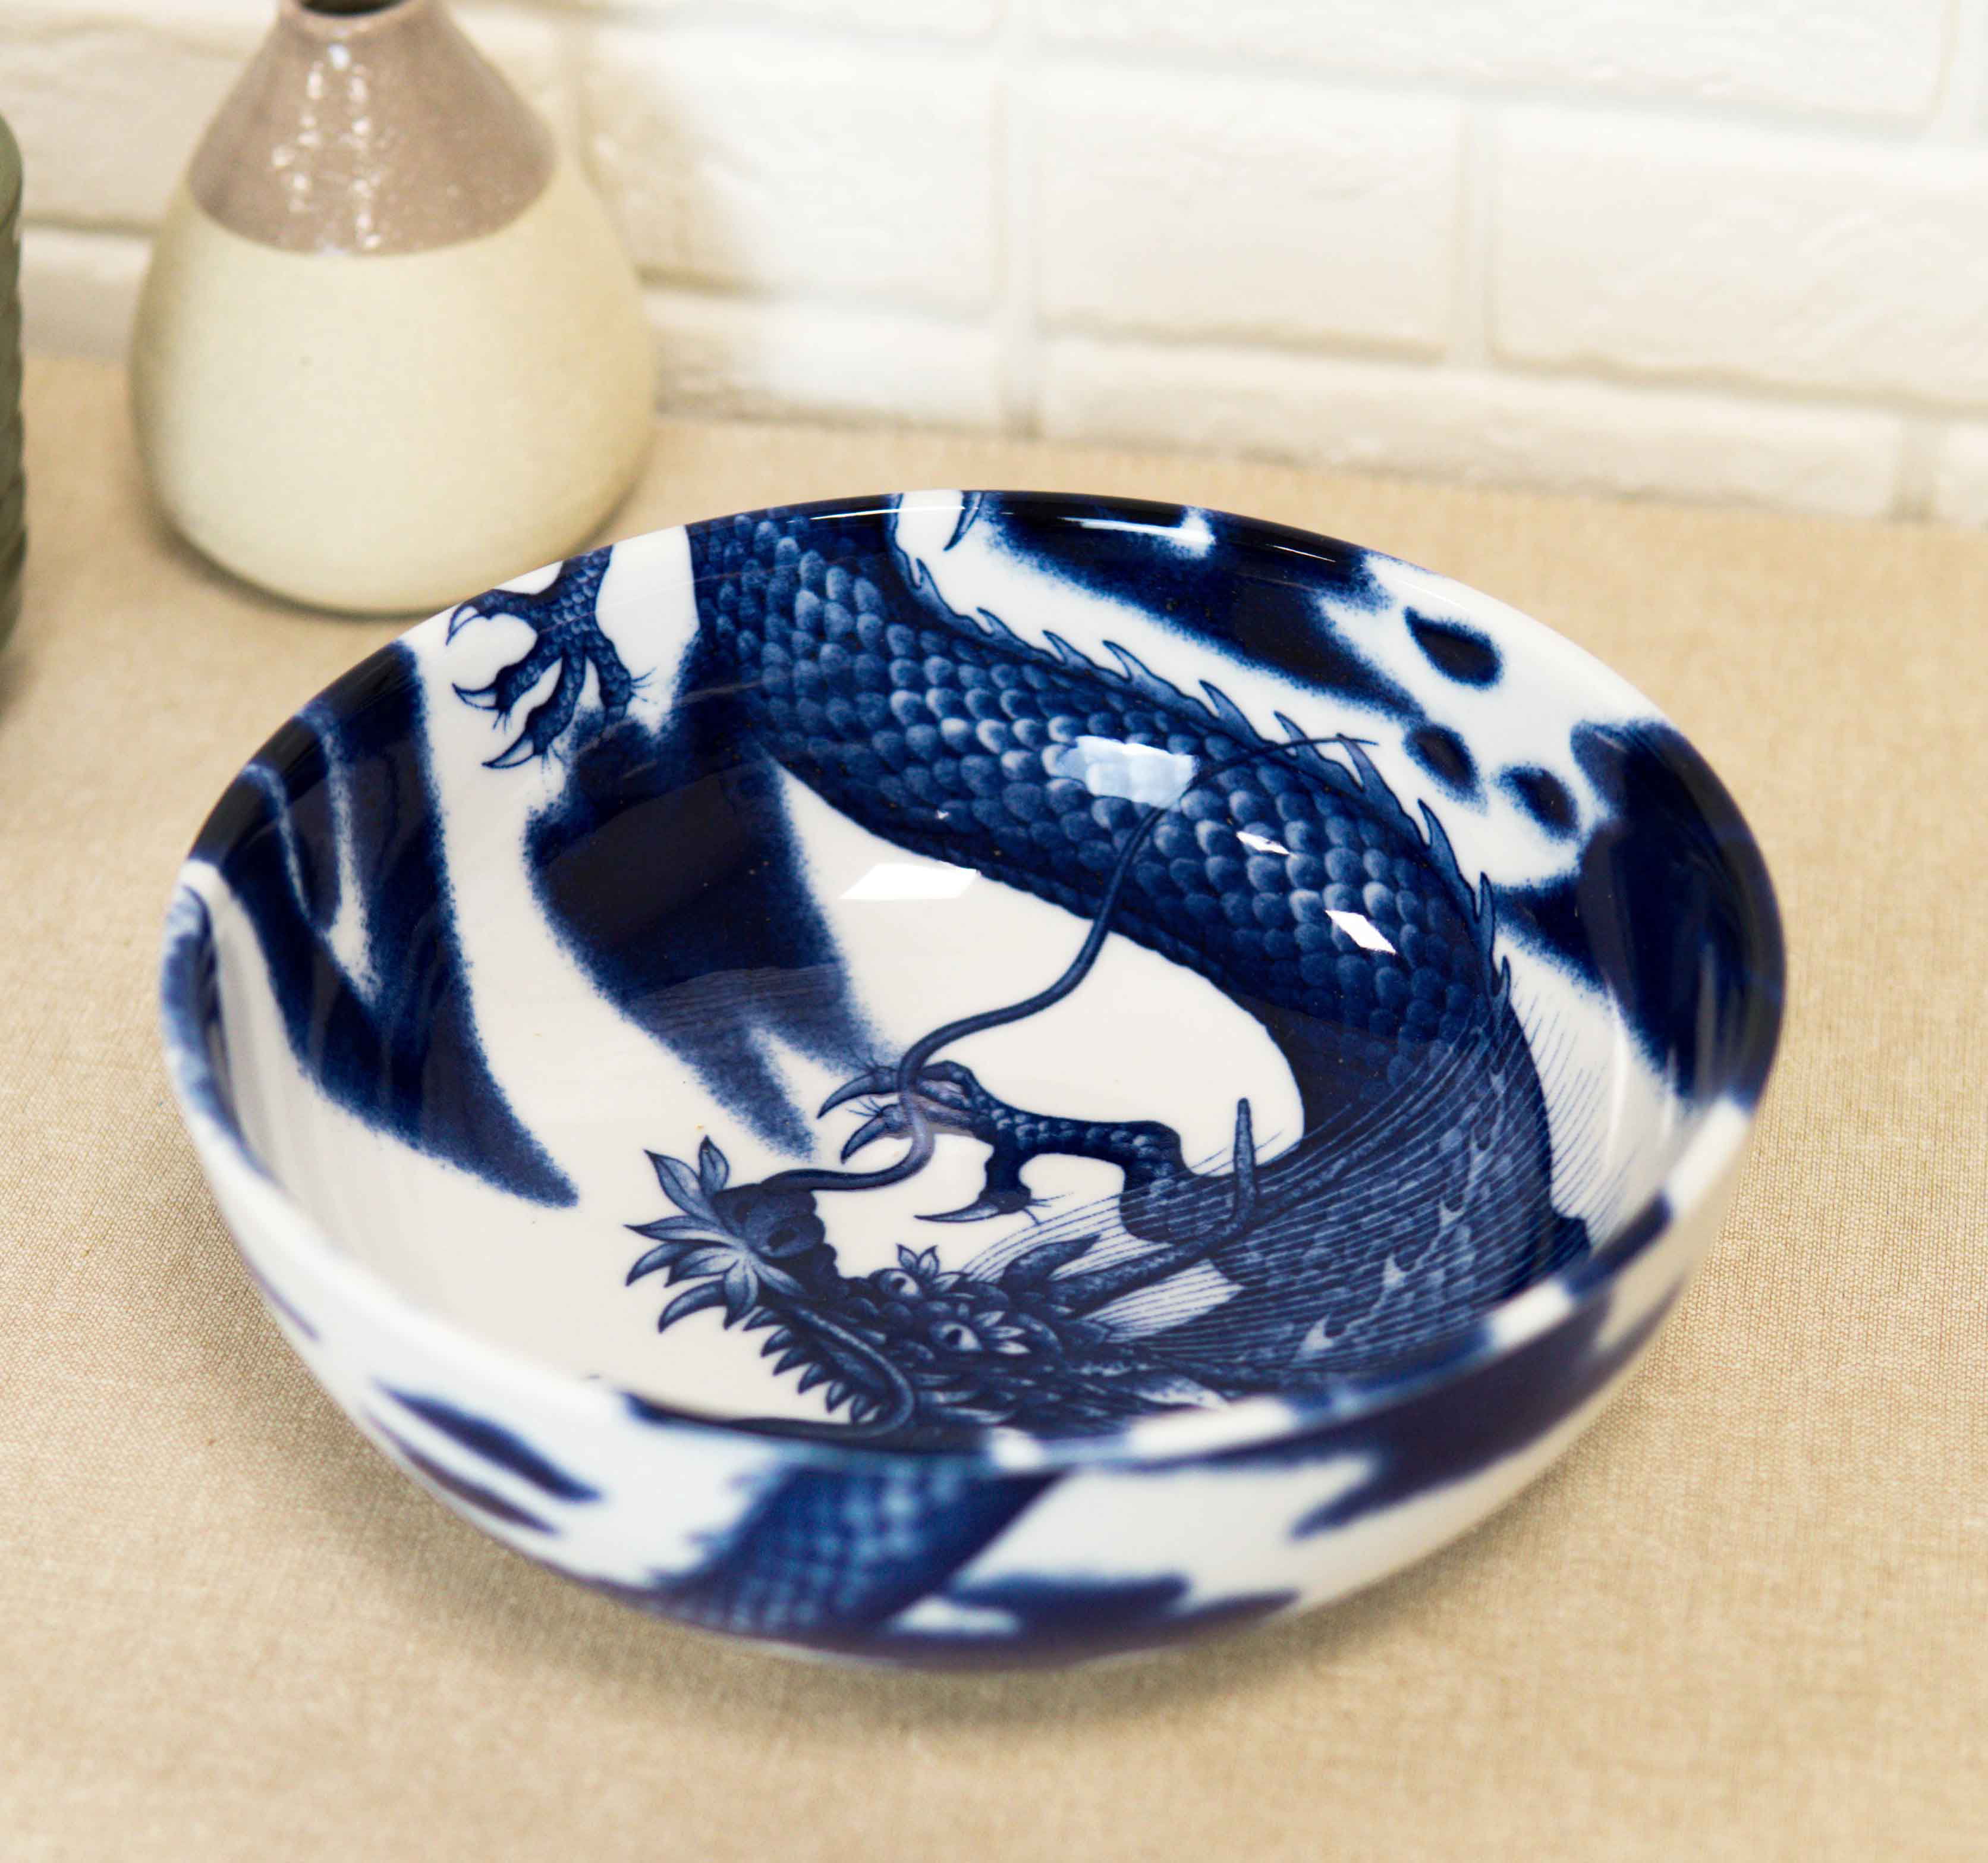 Porcelain Bowl Set of 4 Blue and Black Dragon Motif Made in Japan 